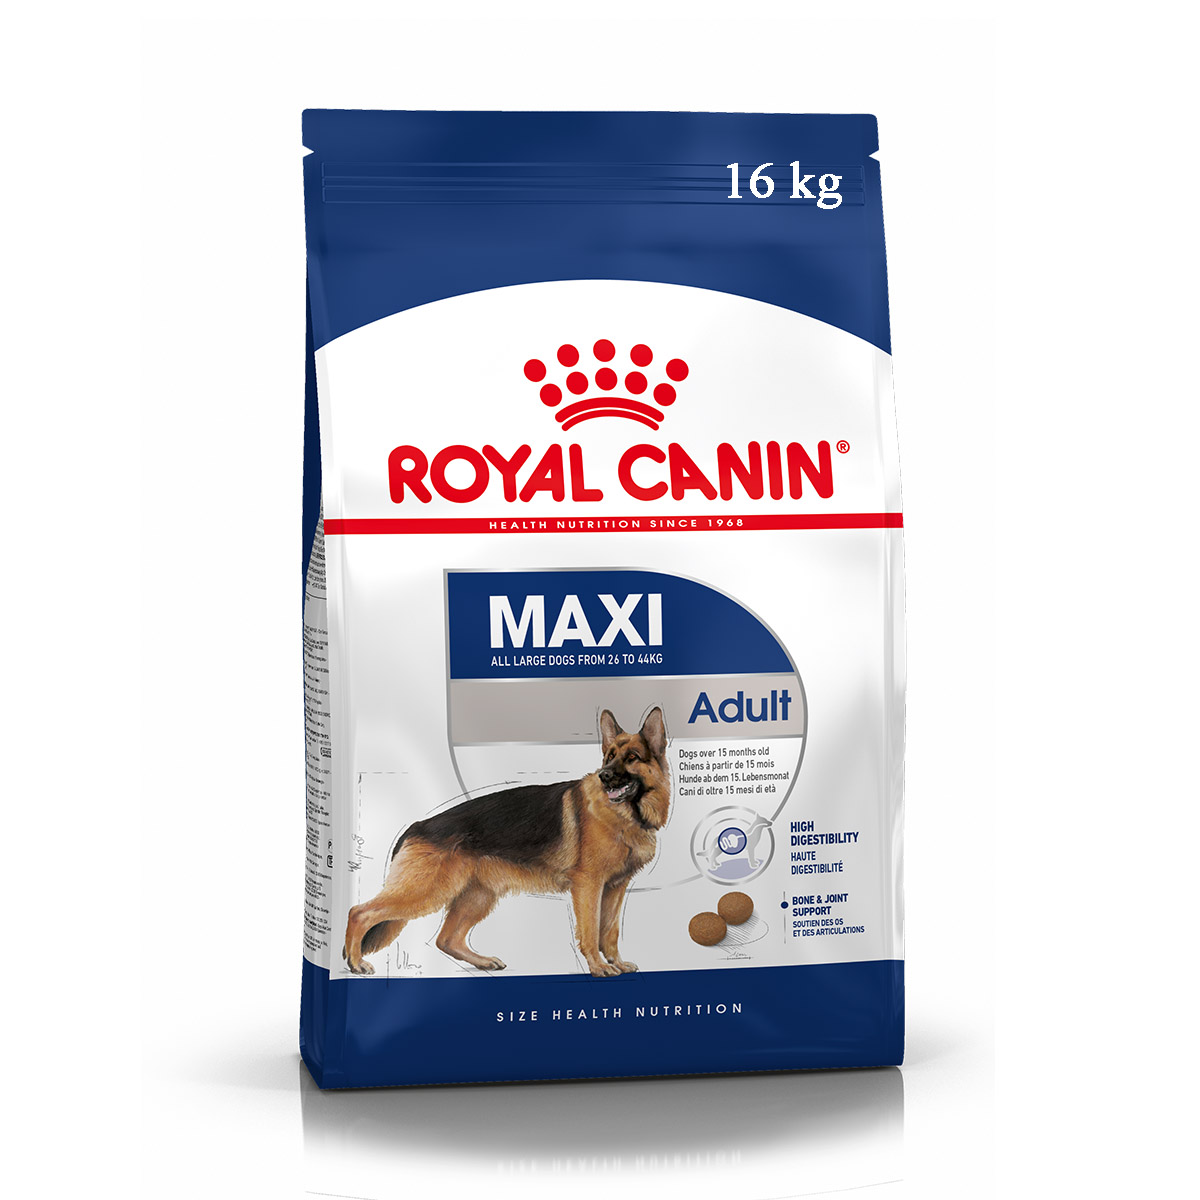 Royal canin maxi adult - Thức ăn cho chó trưởng thành cỡ lớn 16kg